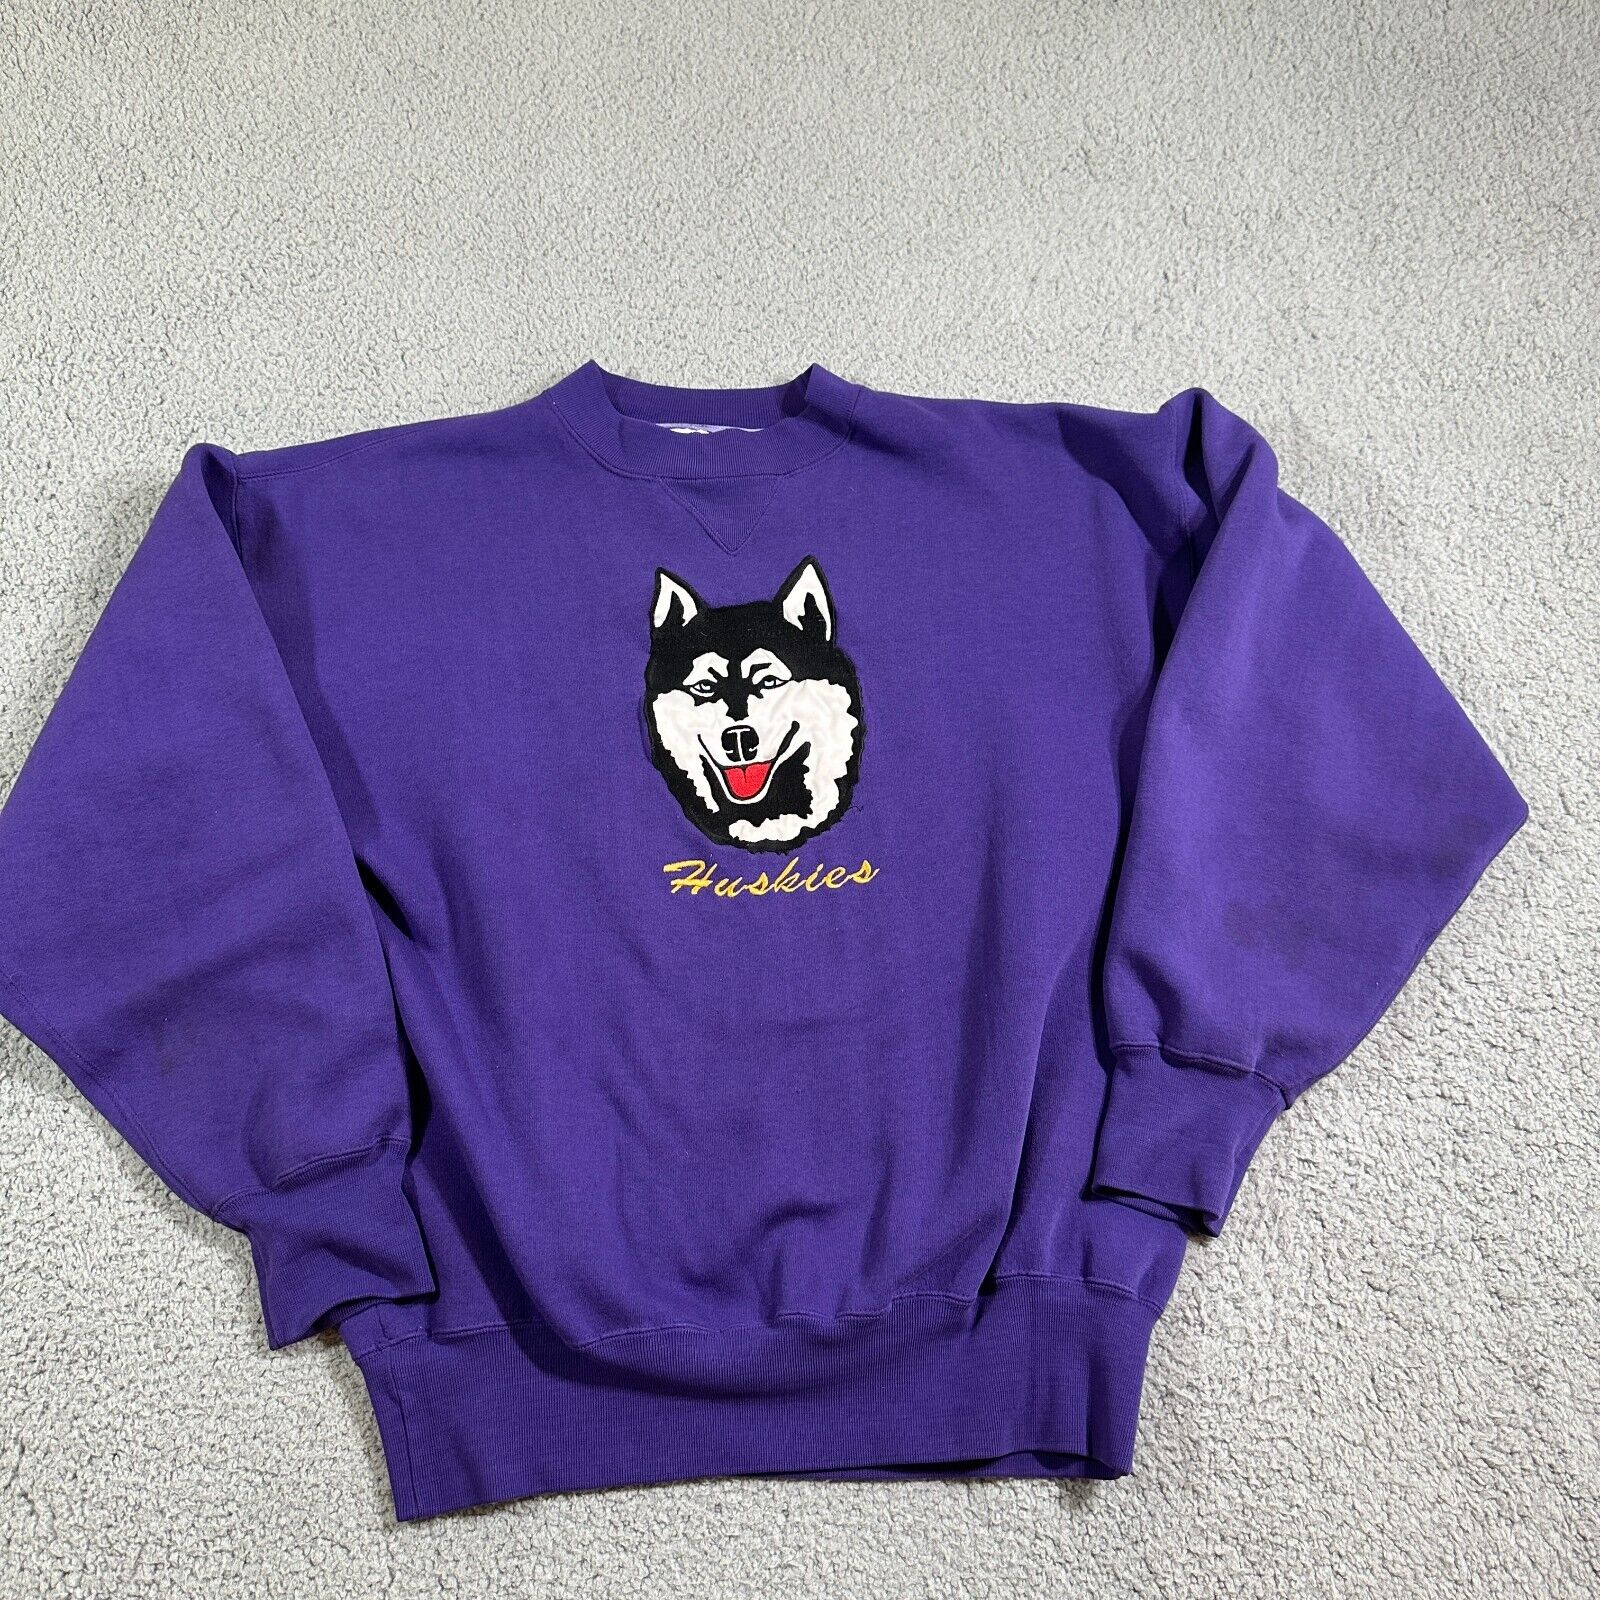 Vintage Midwest Embroidery Husky Purple Sweatshirt Men Adult Large 90S